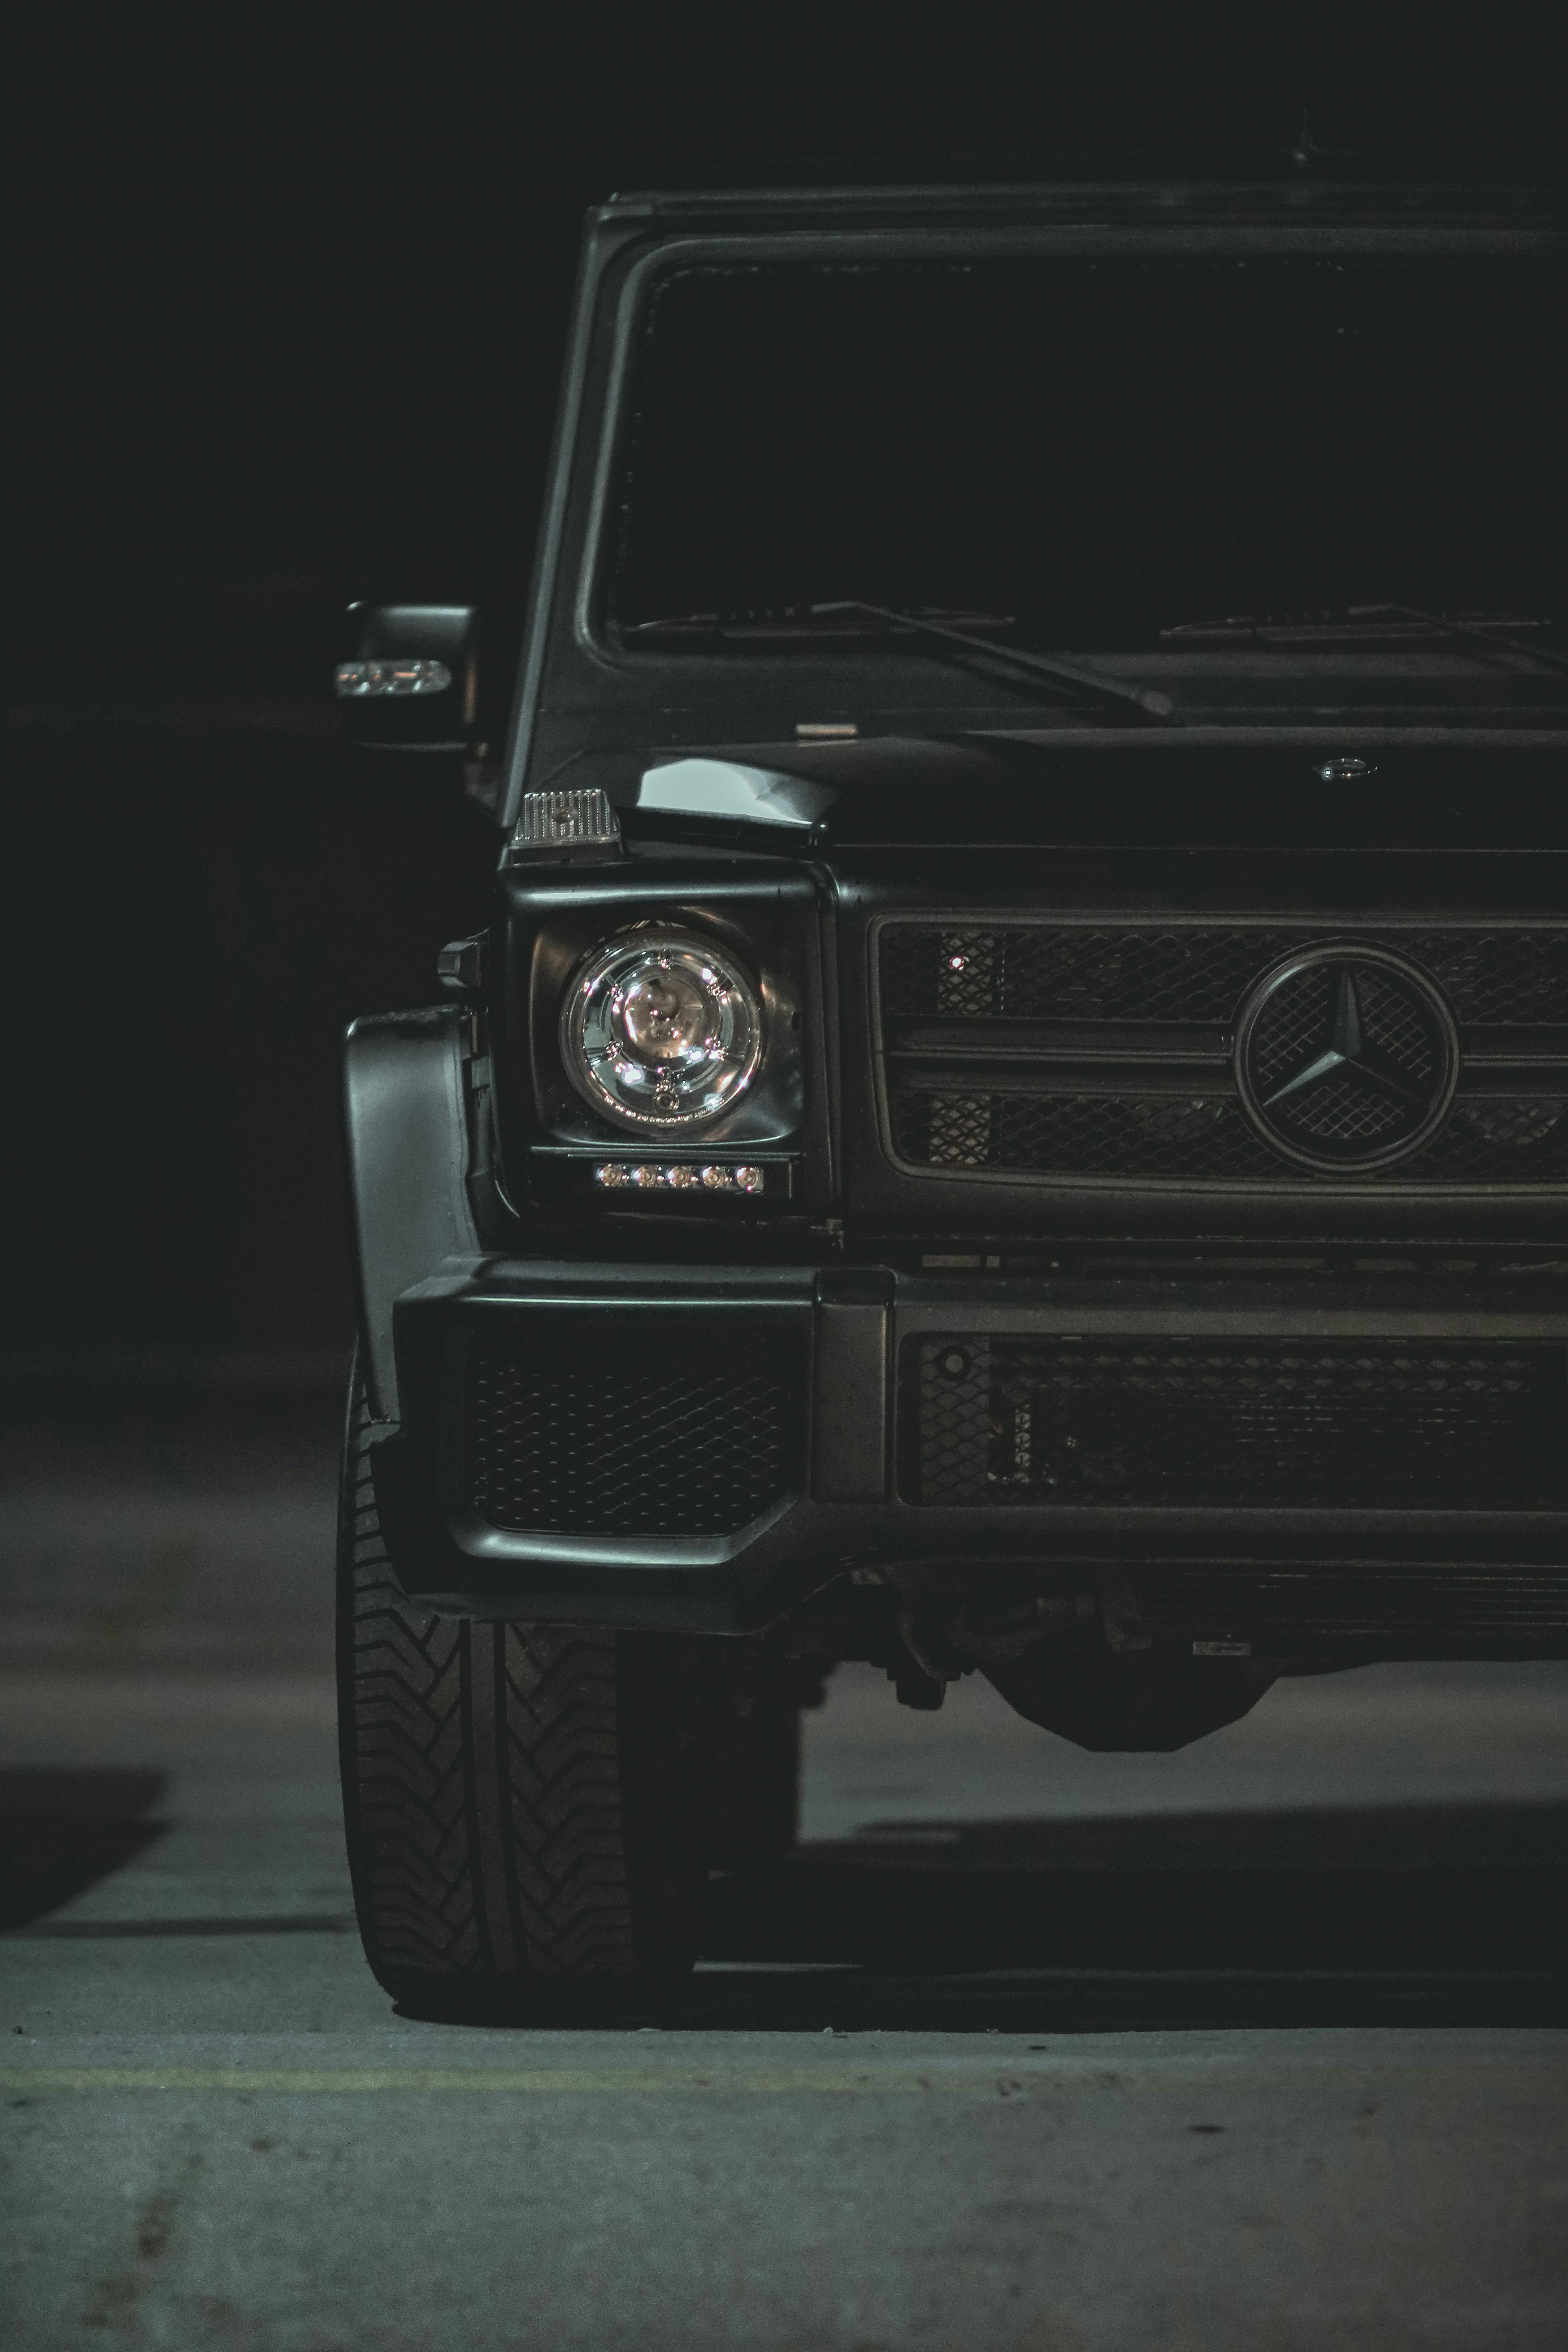 Với Hình nền Mercedes 4k đen chất lượng cao mới nhất, thế giới xe hơi thật sự đang ở trong tầm tay bạn. Với chất lượng hình ảnh cực đẹp và độ sắc nét cao, chỉ cần một cái nhìn, bạn đã có thể cảm nhận được vẻ đẹp của những chiếc Mercedes đang chạy trên đường phố.